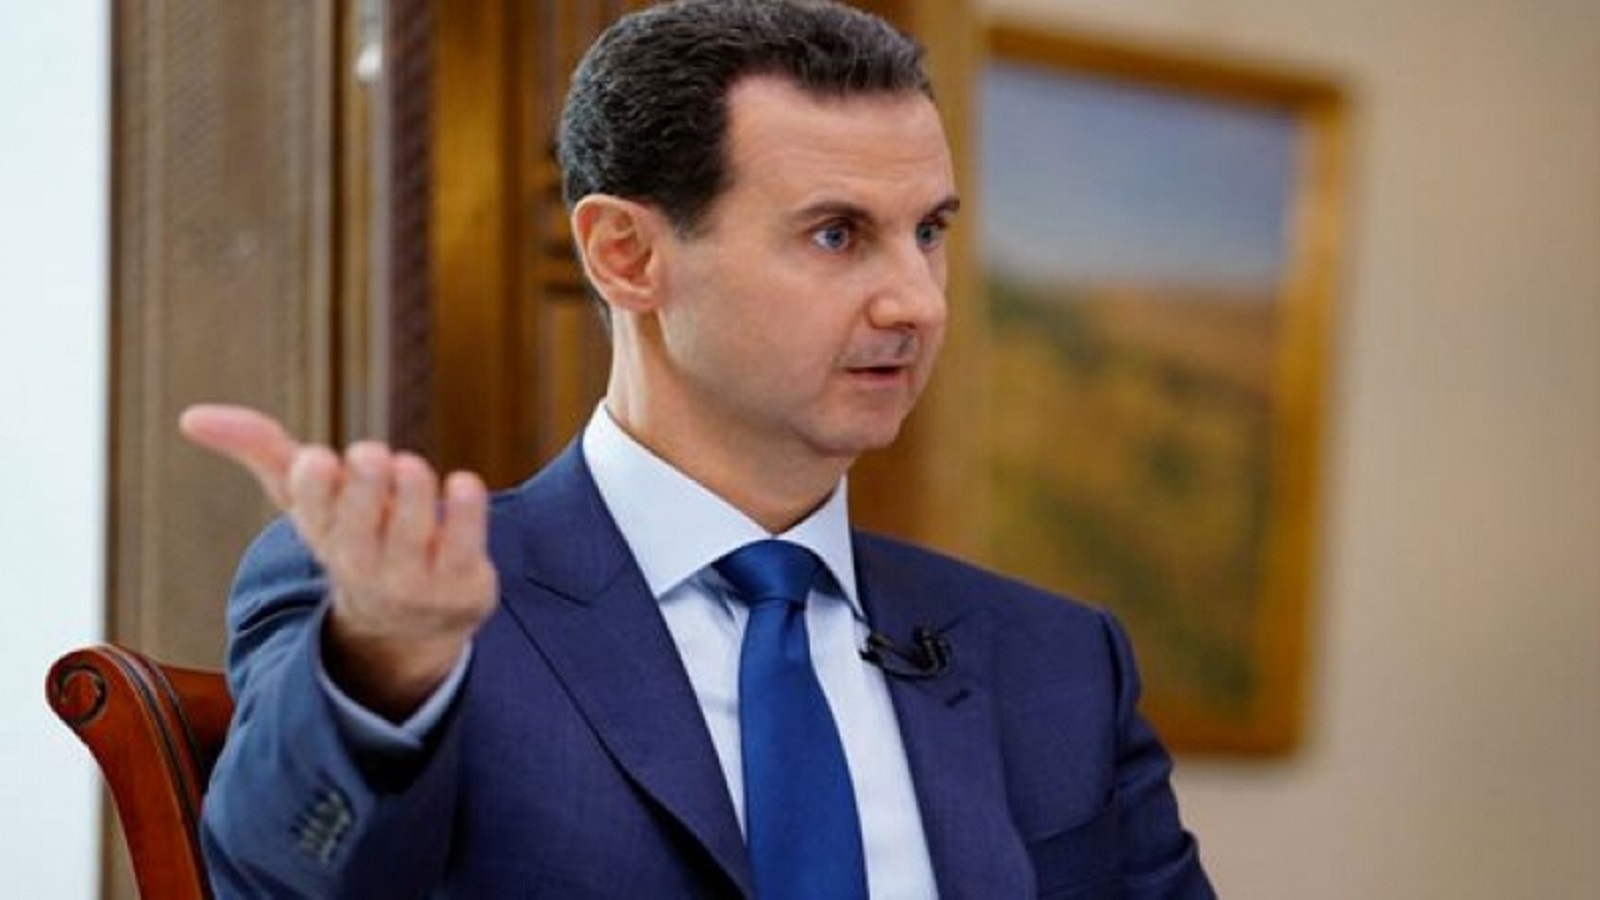 المرشحون للرئاسة السورية: اتفرّج يا سلام!